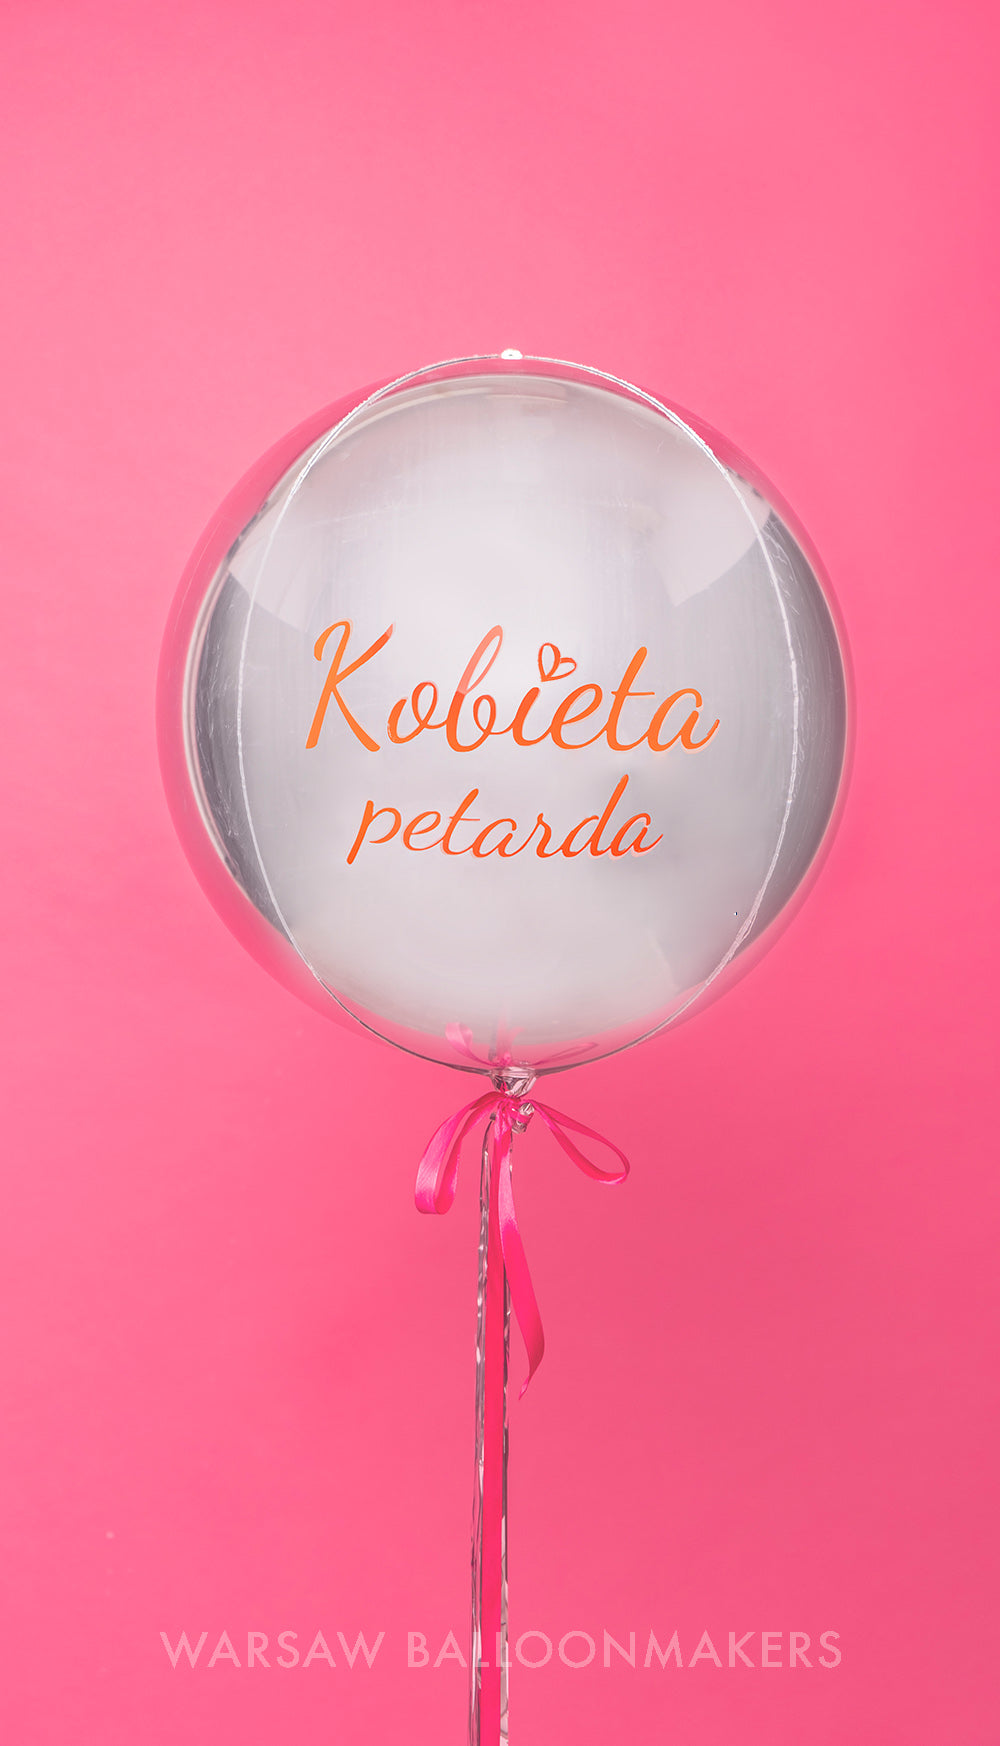 kampania rak piersi balon orbz kula z logo od warsaw balloon makers kobieta petarda życzenia